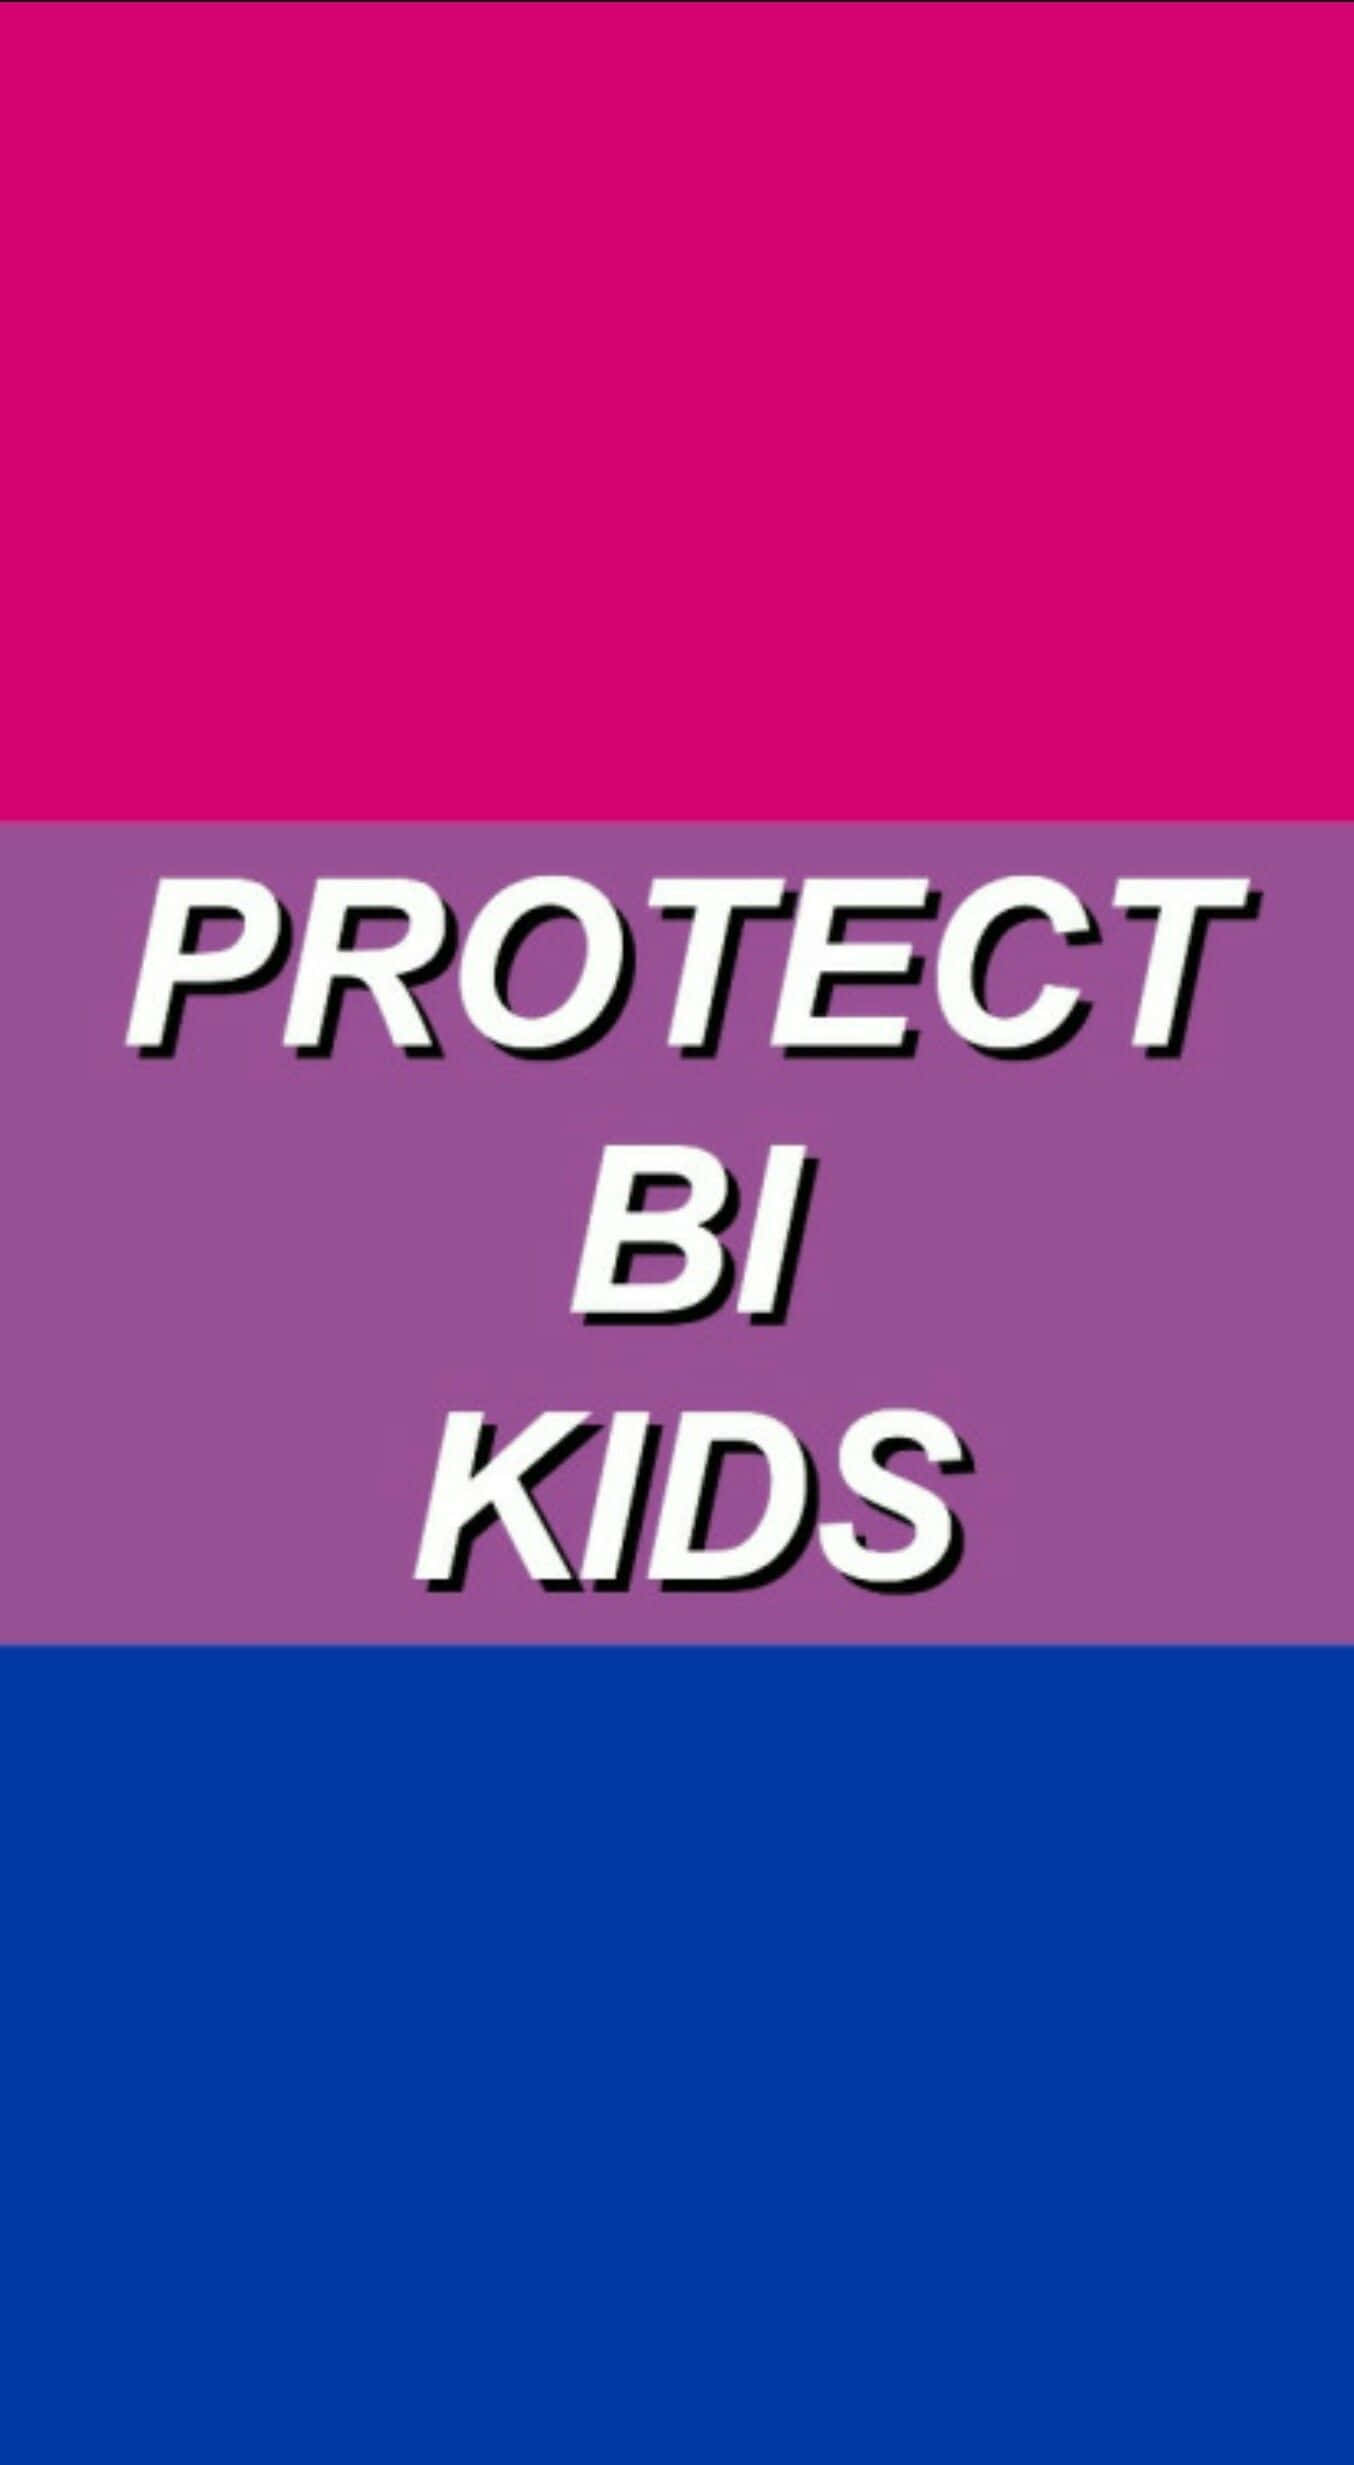 Proteggii Ragazzi Bisessuali - Una Bandiera Rosa E Viola Con Le Parole Proteggi I Ragazzi Bisessuali